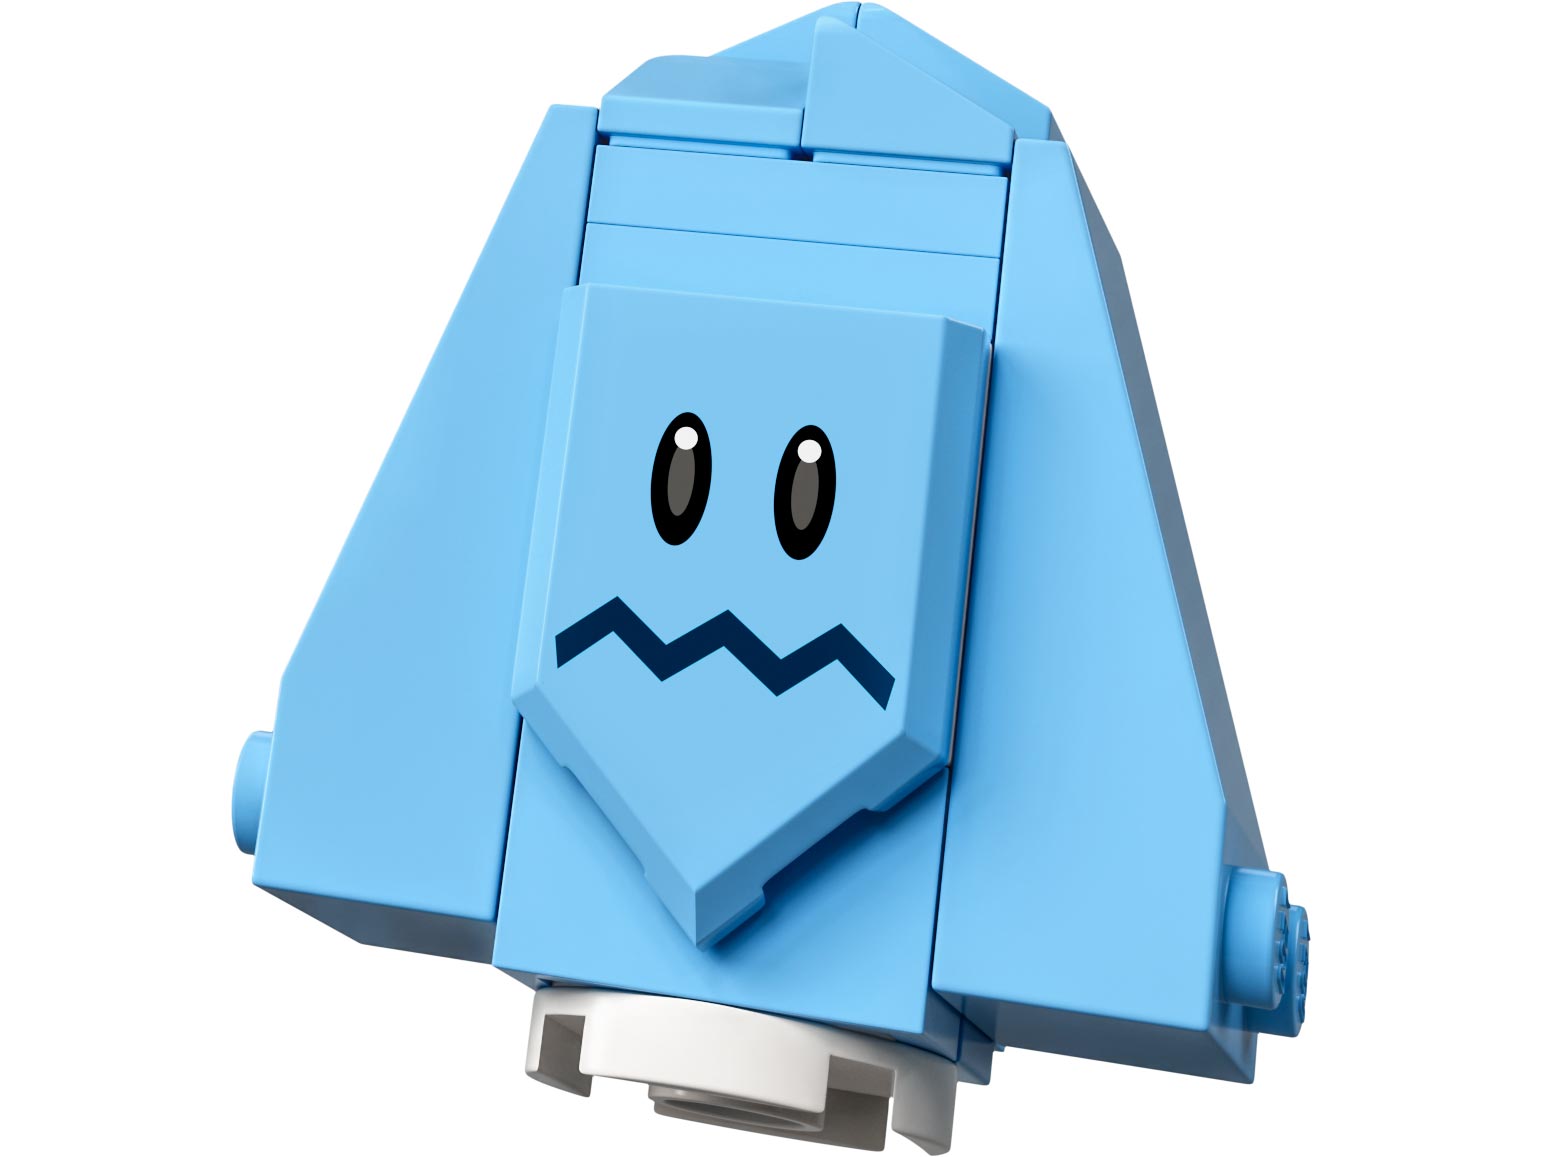 Конструктор Lego Super Mario 71402 Minifigures Фигурки персонажей: серия 4